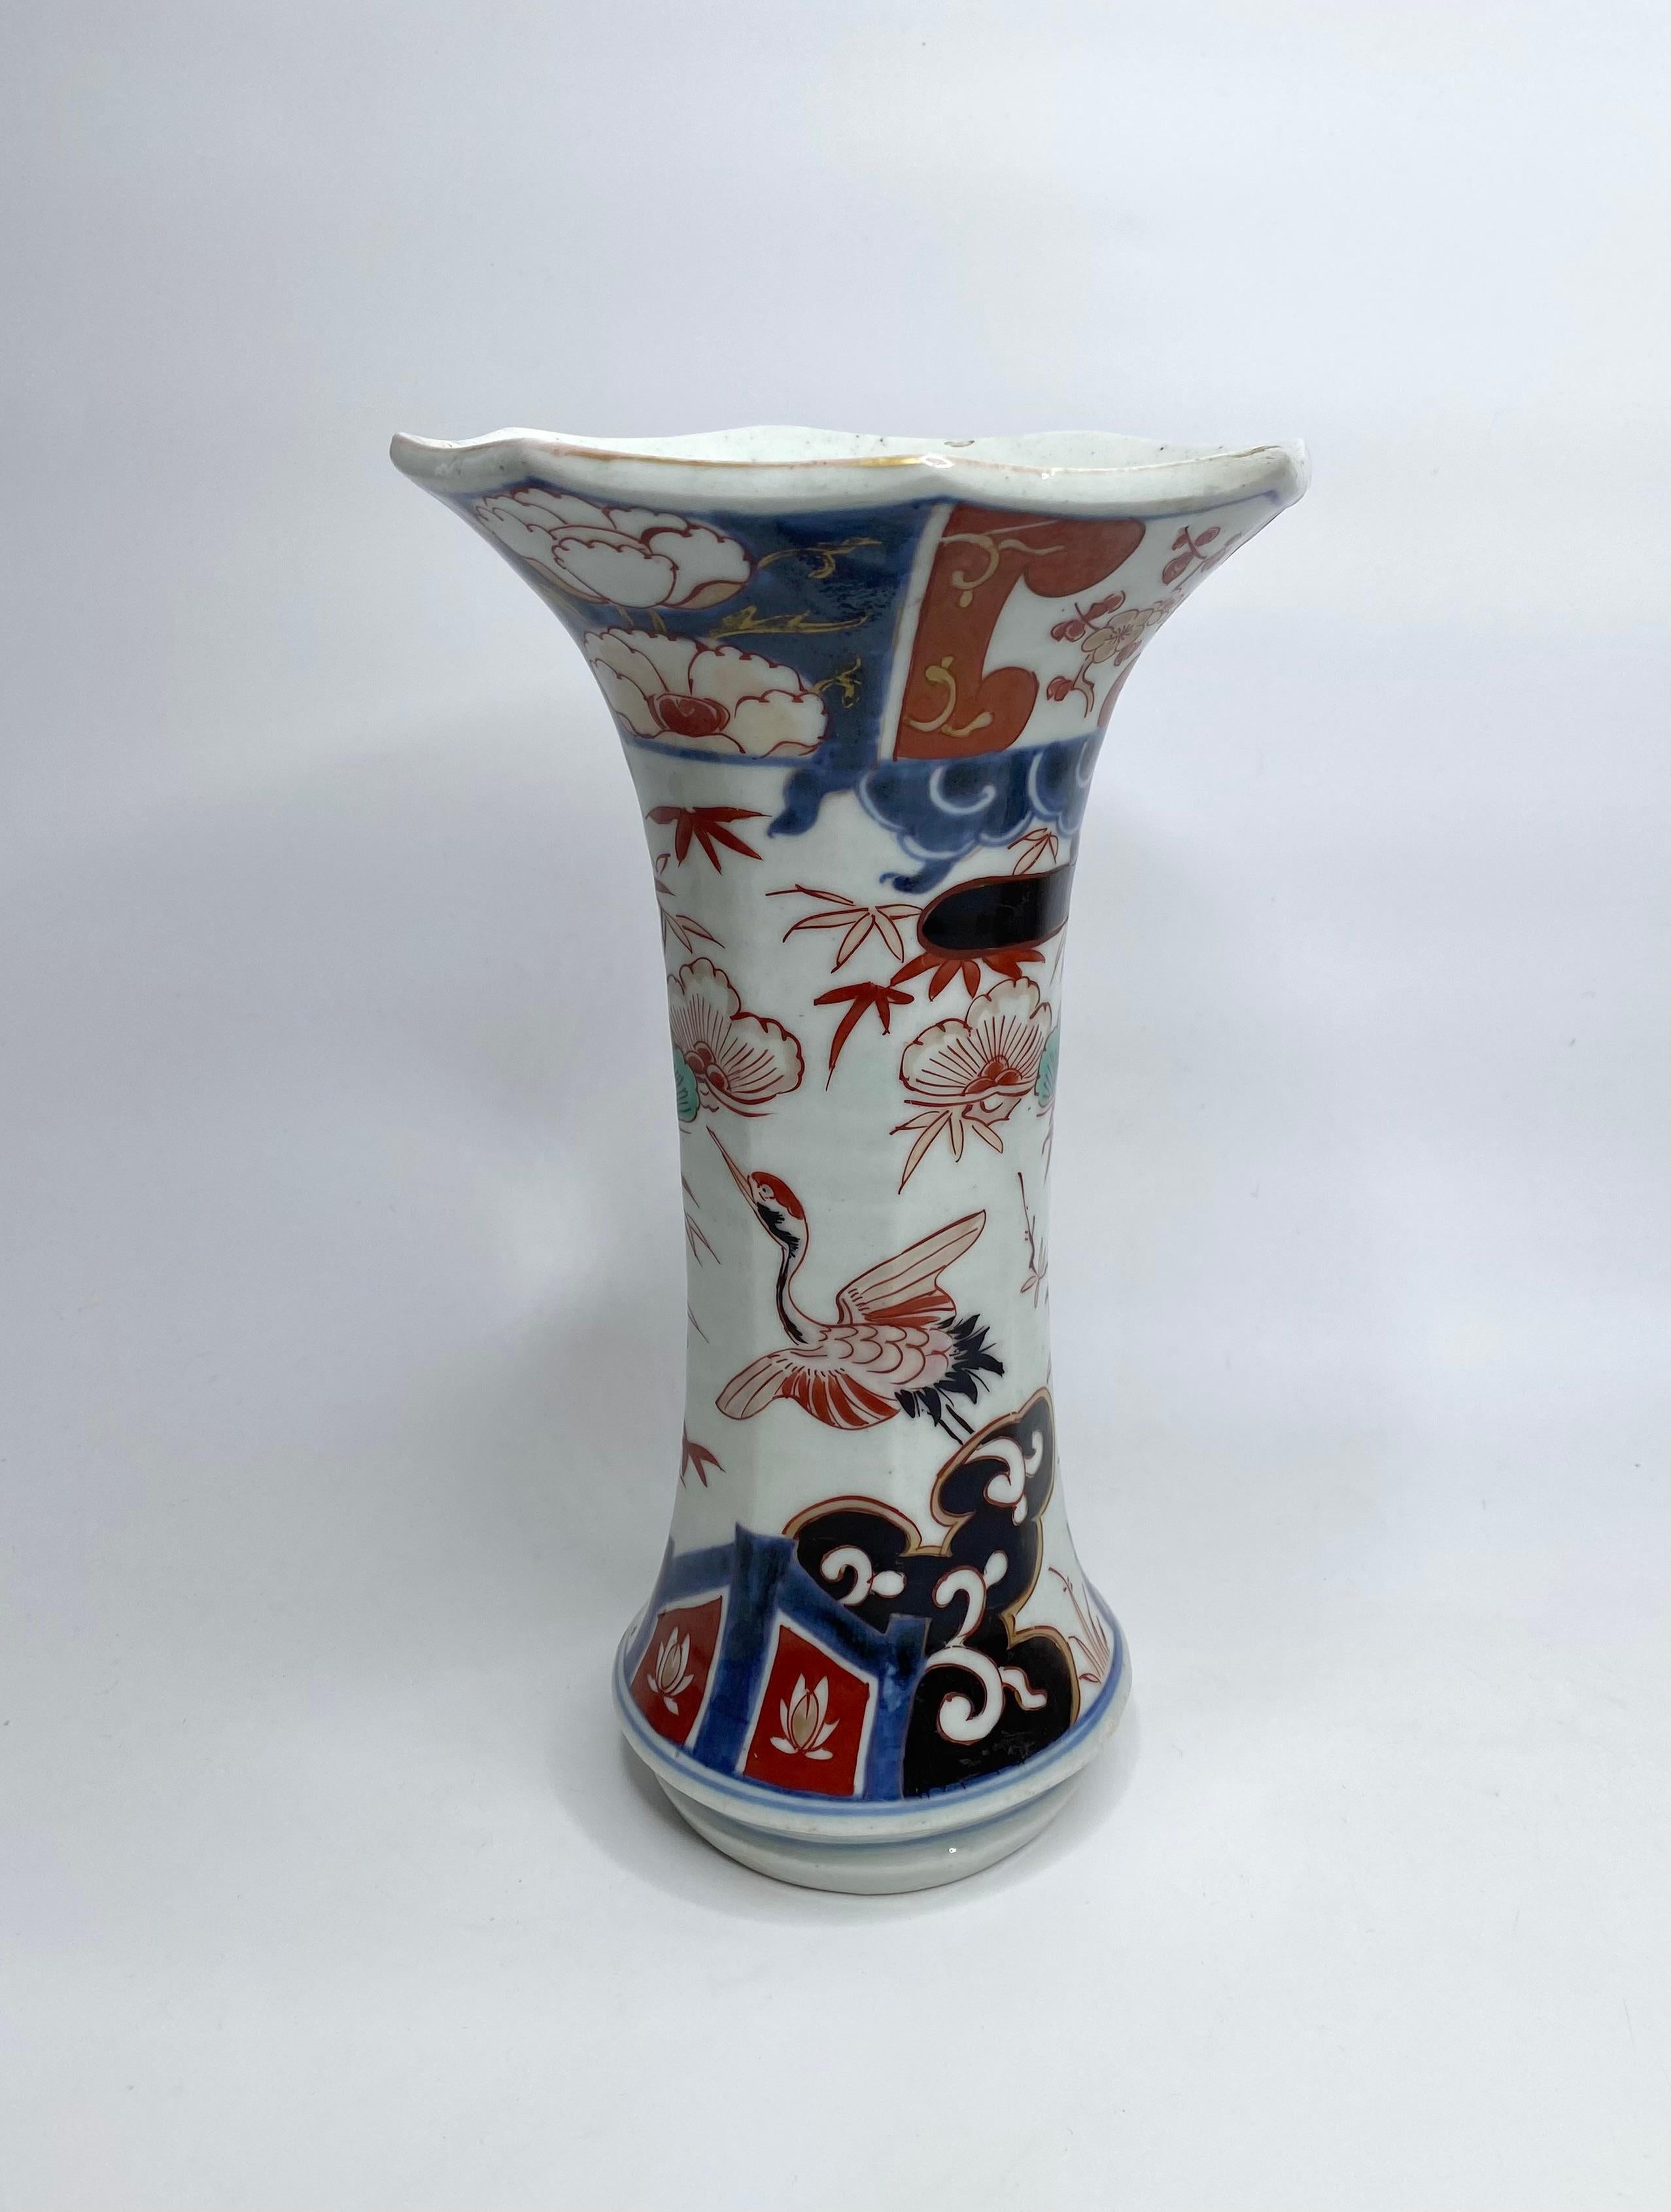 Japanese Pair Imari porcelain vases, Arita, Japan, c. 1700. Genryoku Period.